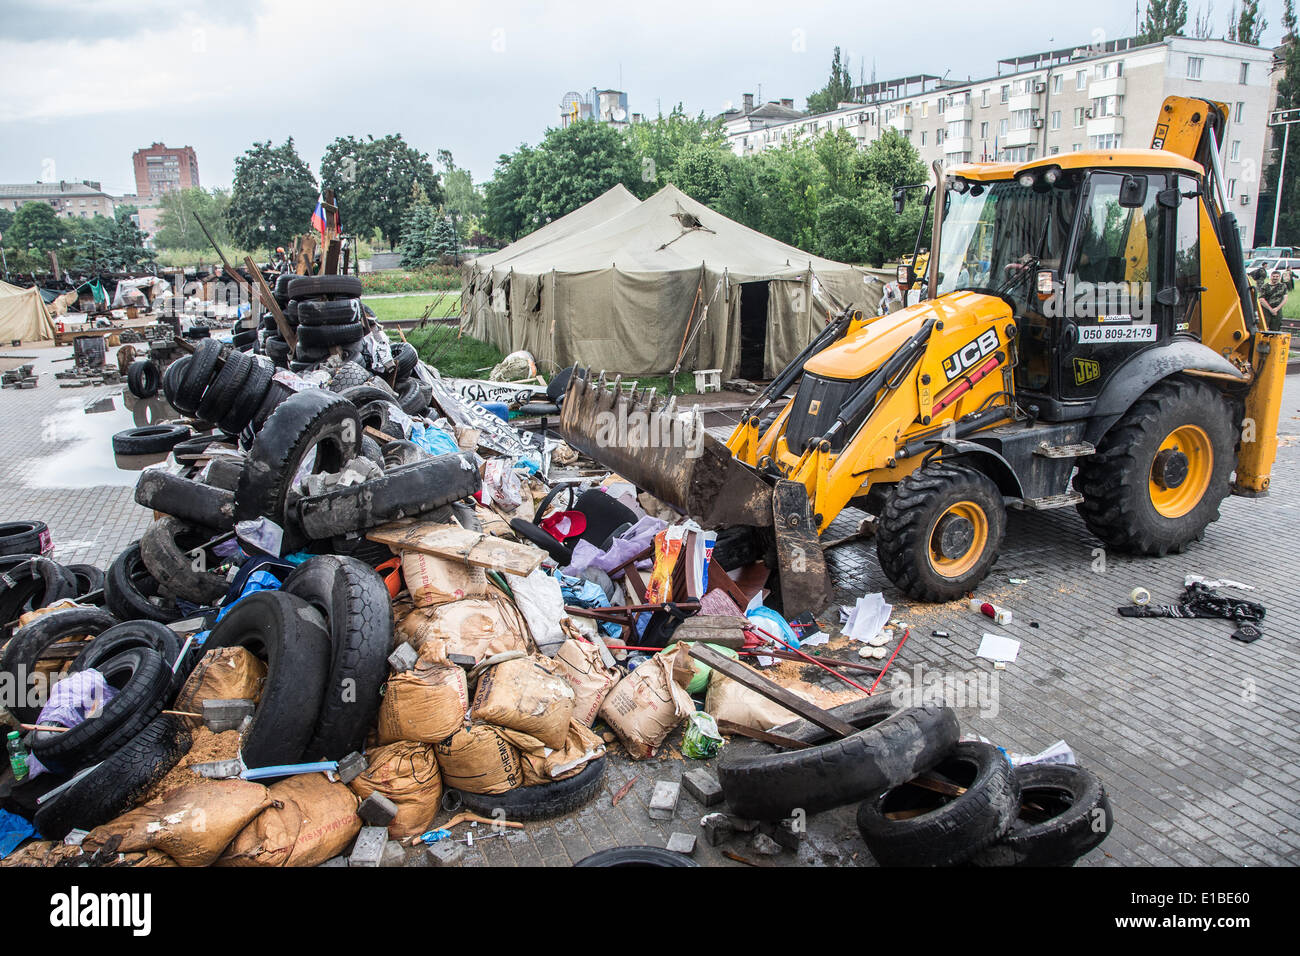 Baumaschinen entfernen am 29.05.2014 in Donezk, Ucraina, Barrikaden, die vorher von separatistischen, pro-russischen Kämpfern errichtet worden waren. Foto: Jan A. Nicolas/dpa Foto Stock